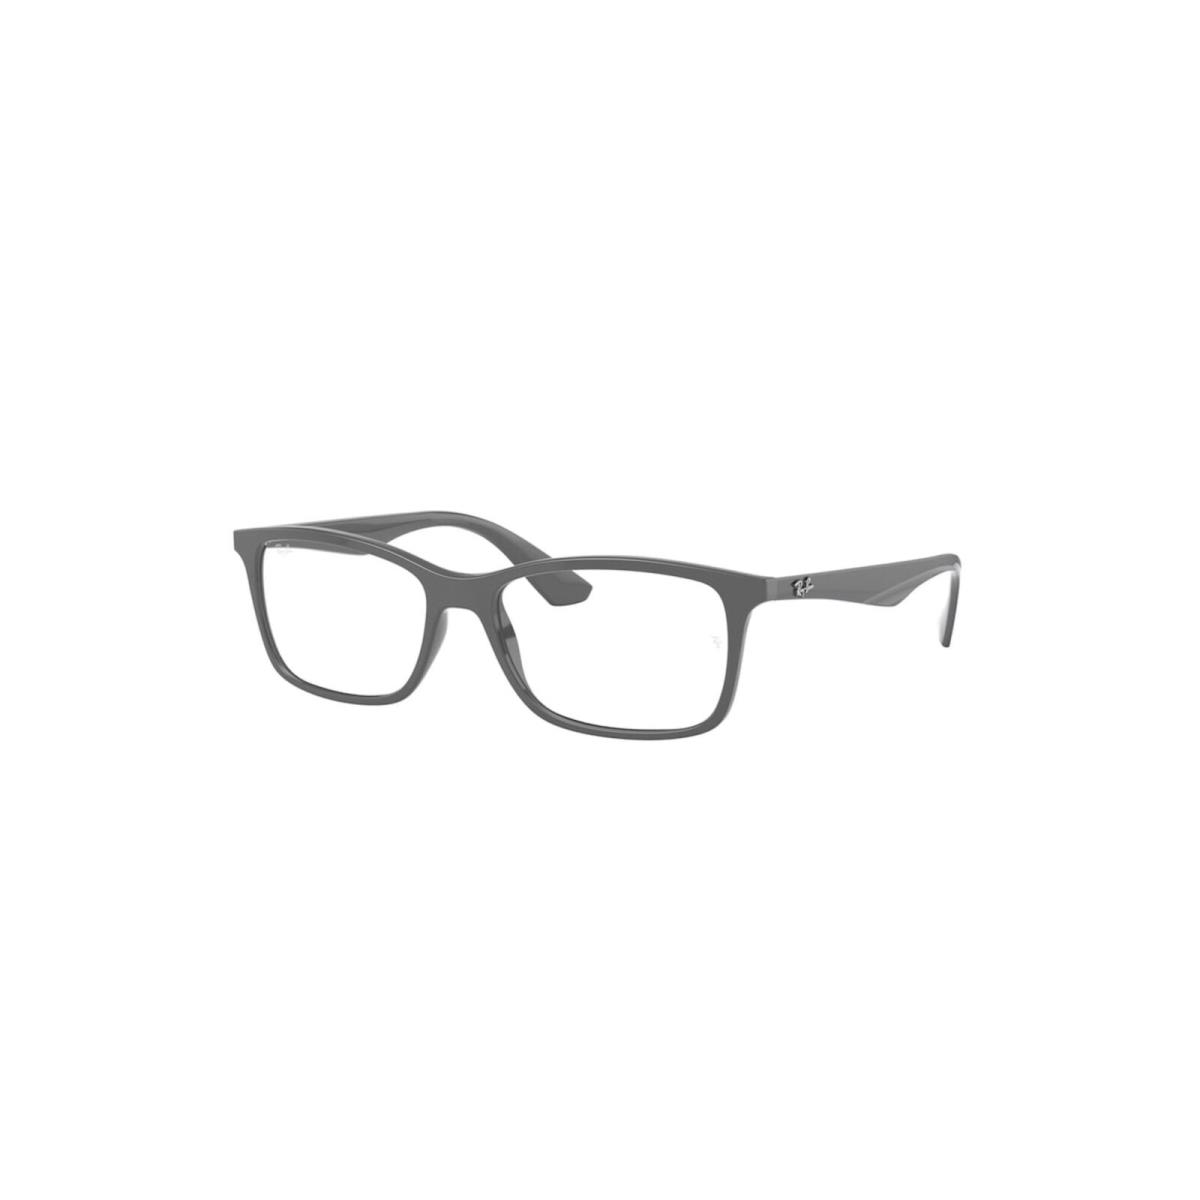 Ray-ban RX7047 Grey 54-17-140 Square Full Rim Eyeglasses Frames